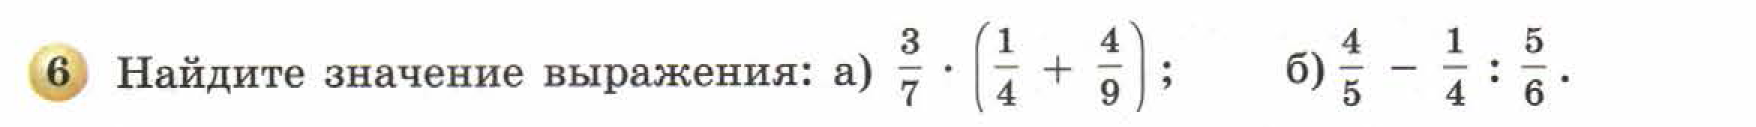 решебник по математике Бунимович 5 класс условие итоги главы 9 задание 6